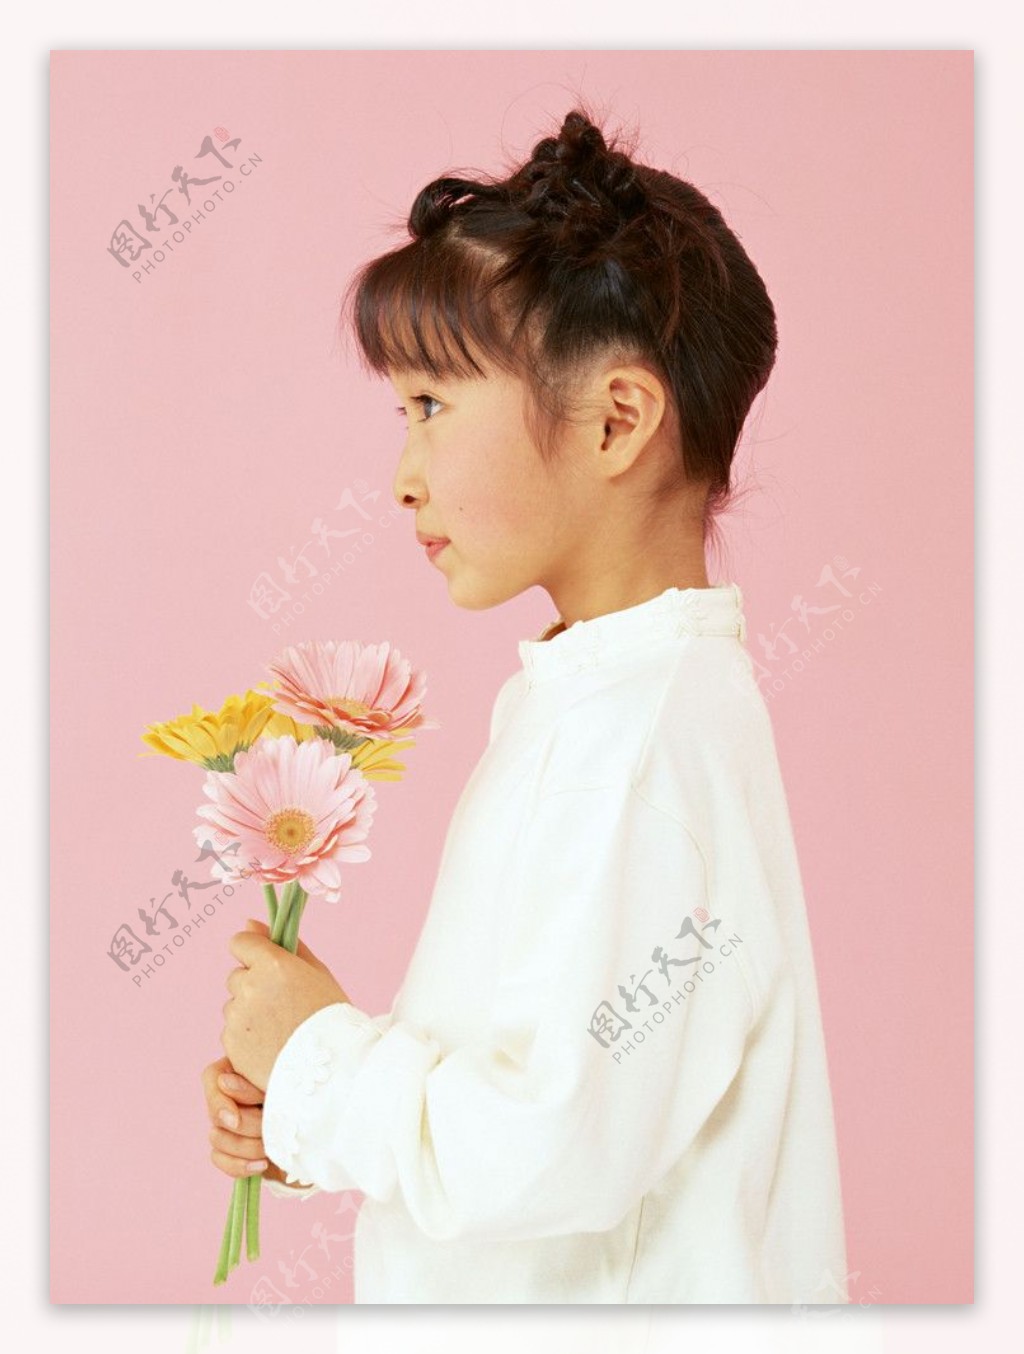 拿着鲜花的微笑小女孩图片